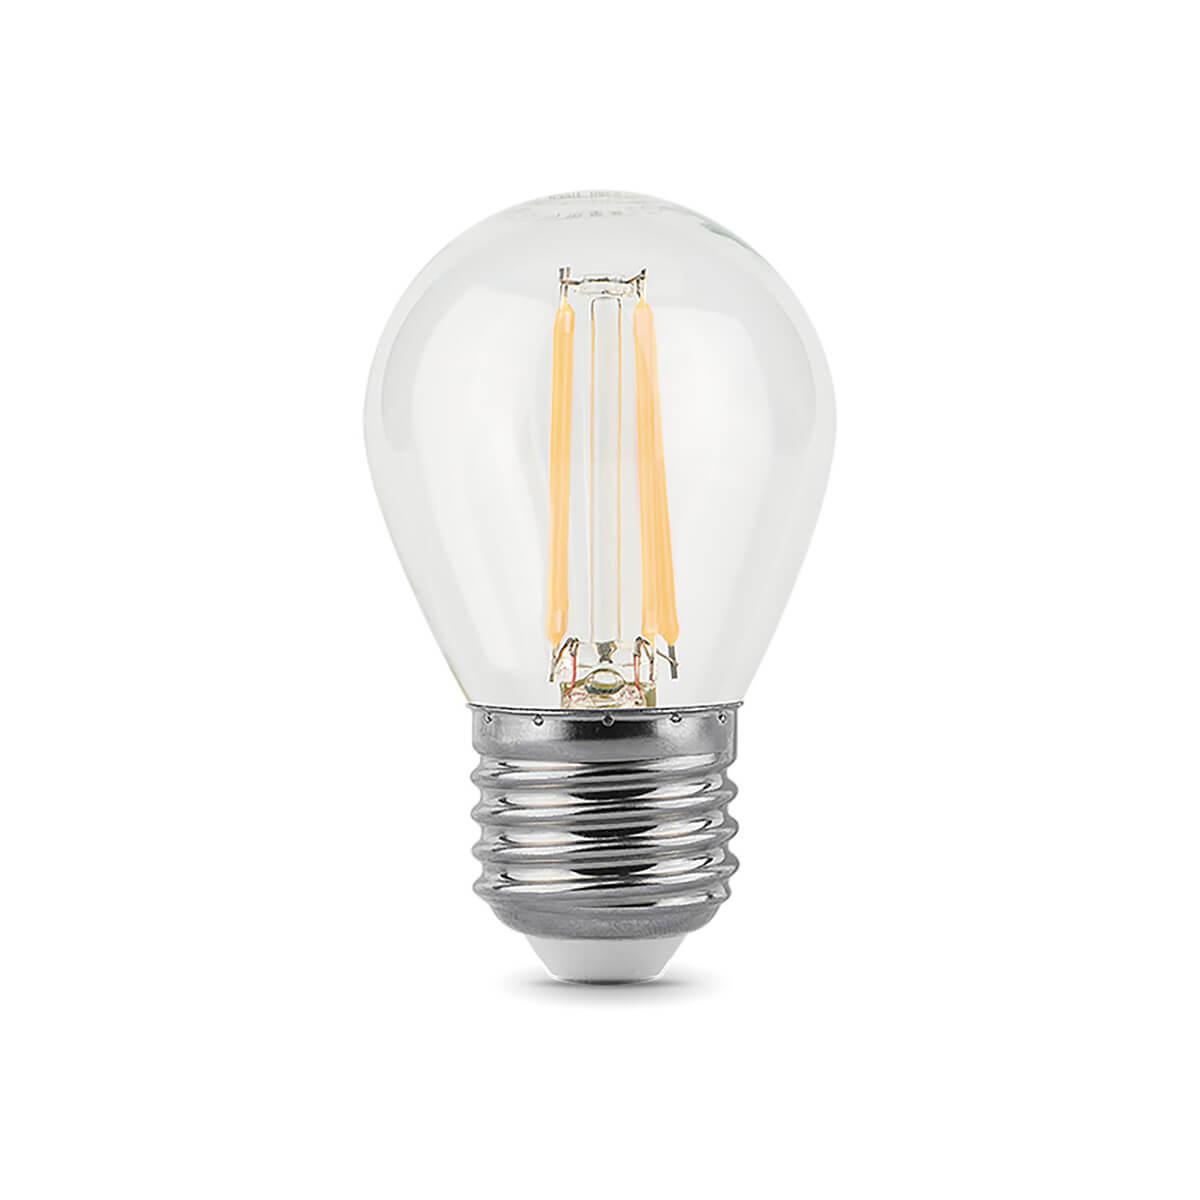 Лампа светодиодная филаментная диммируемая E27 7W 4100K прозрачная 105802207-S фото